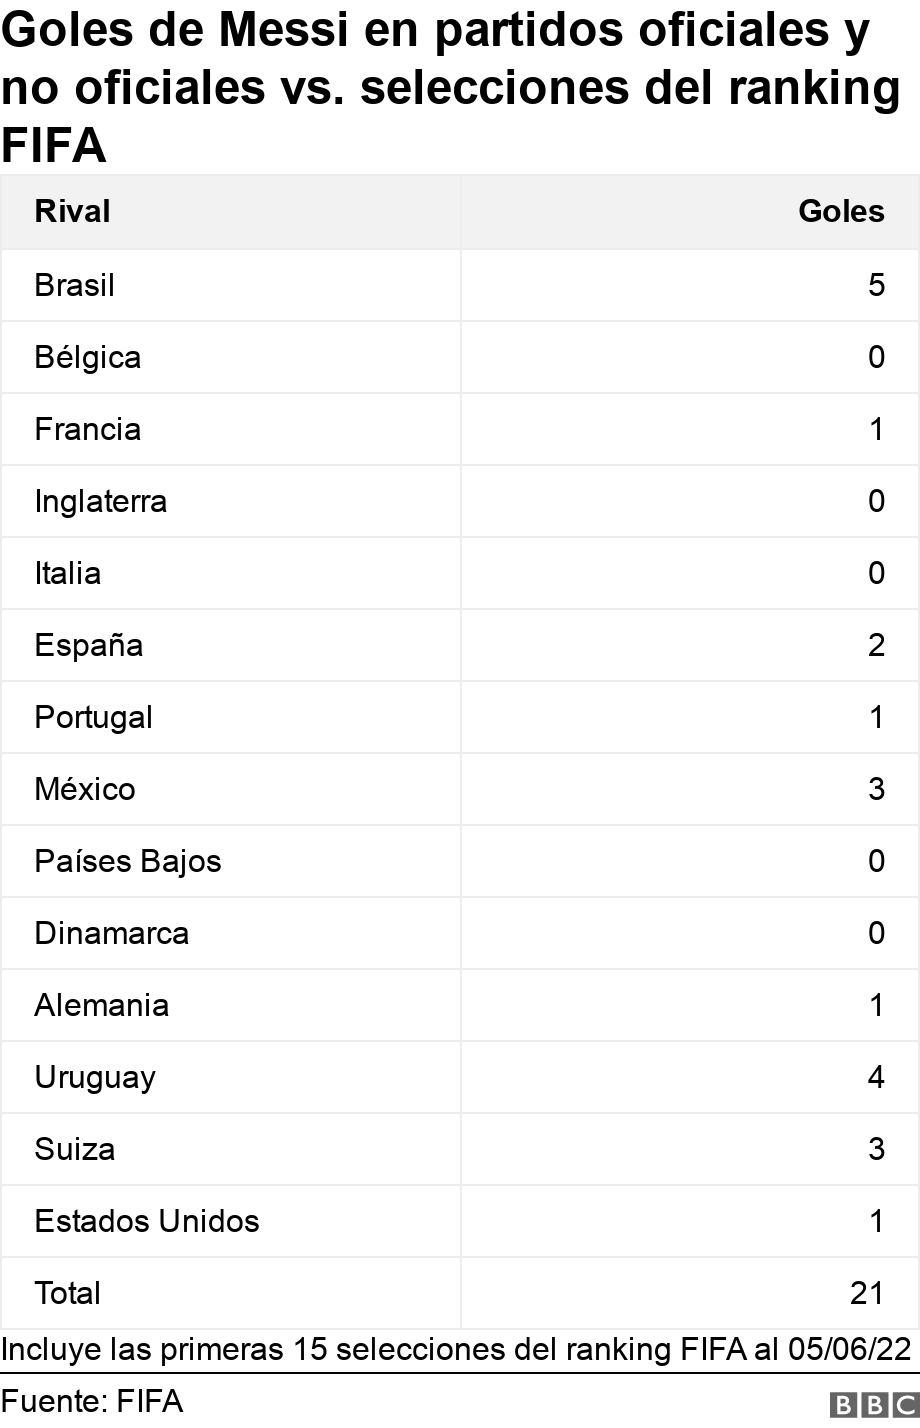 Goles de Messi en partidos oficiales y no oficiales vs. selecciones del ranking FIFA. .  Incluye las primeras 15 selecciones del ranking FIFA al 05/06/22.